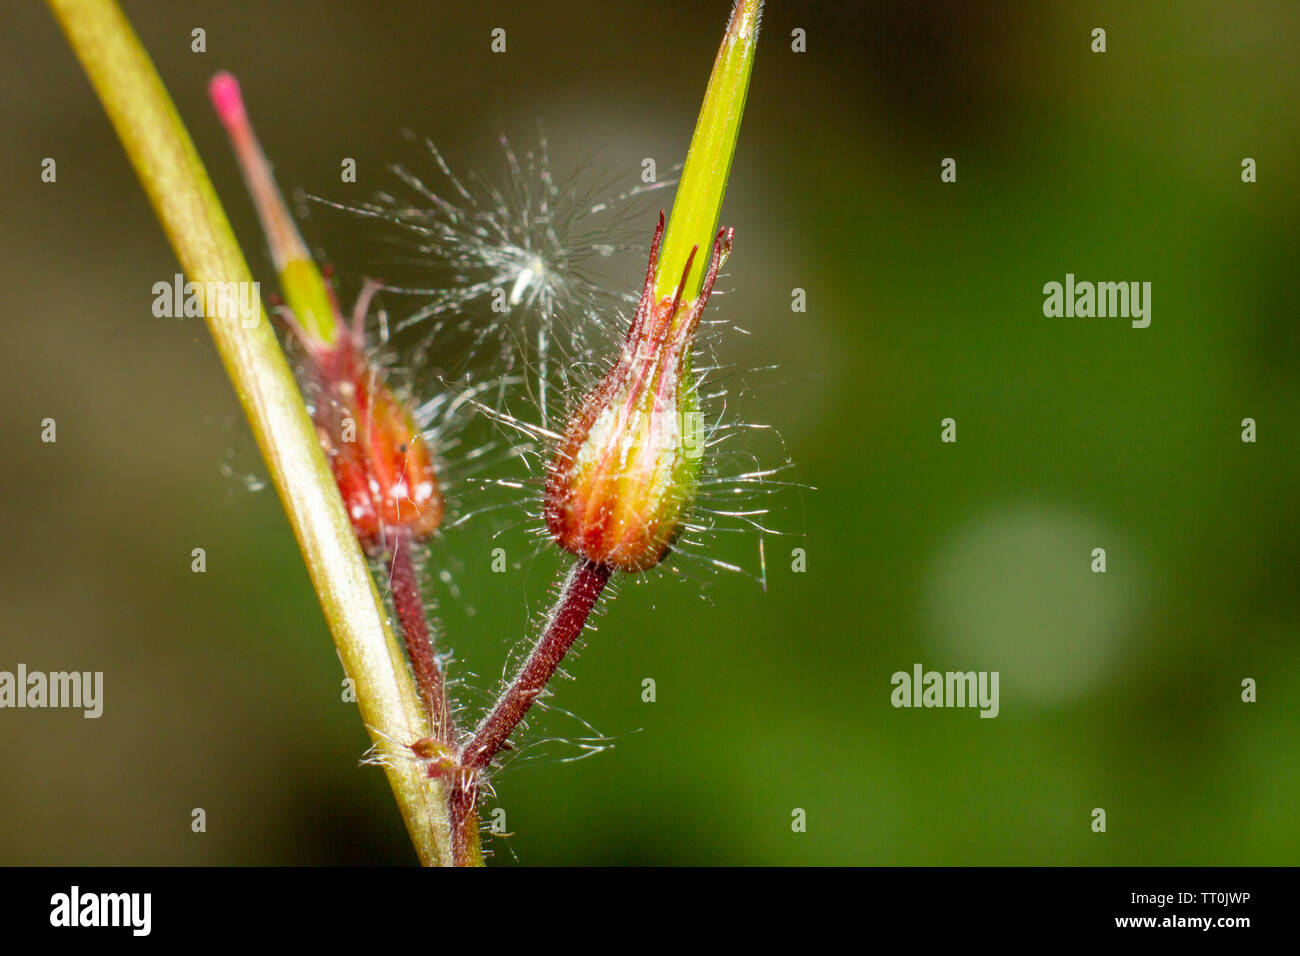 Fiori, bellissimo vicino a colpi di fiori con flash fotografia utilizzando canon a velocità luce e Canon 600D con 55-250mm lente con macro adottante. Foto Stock